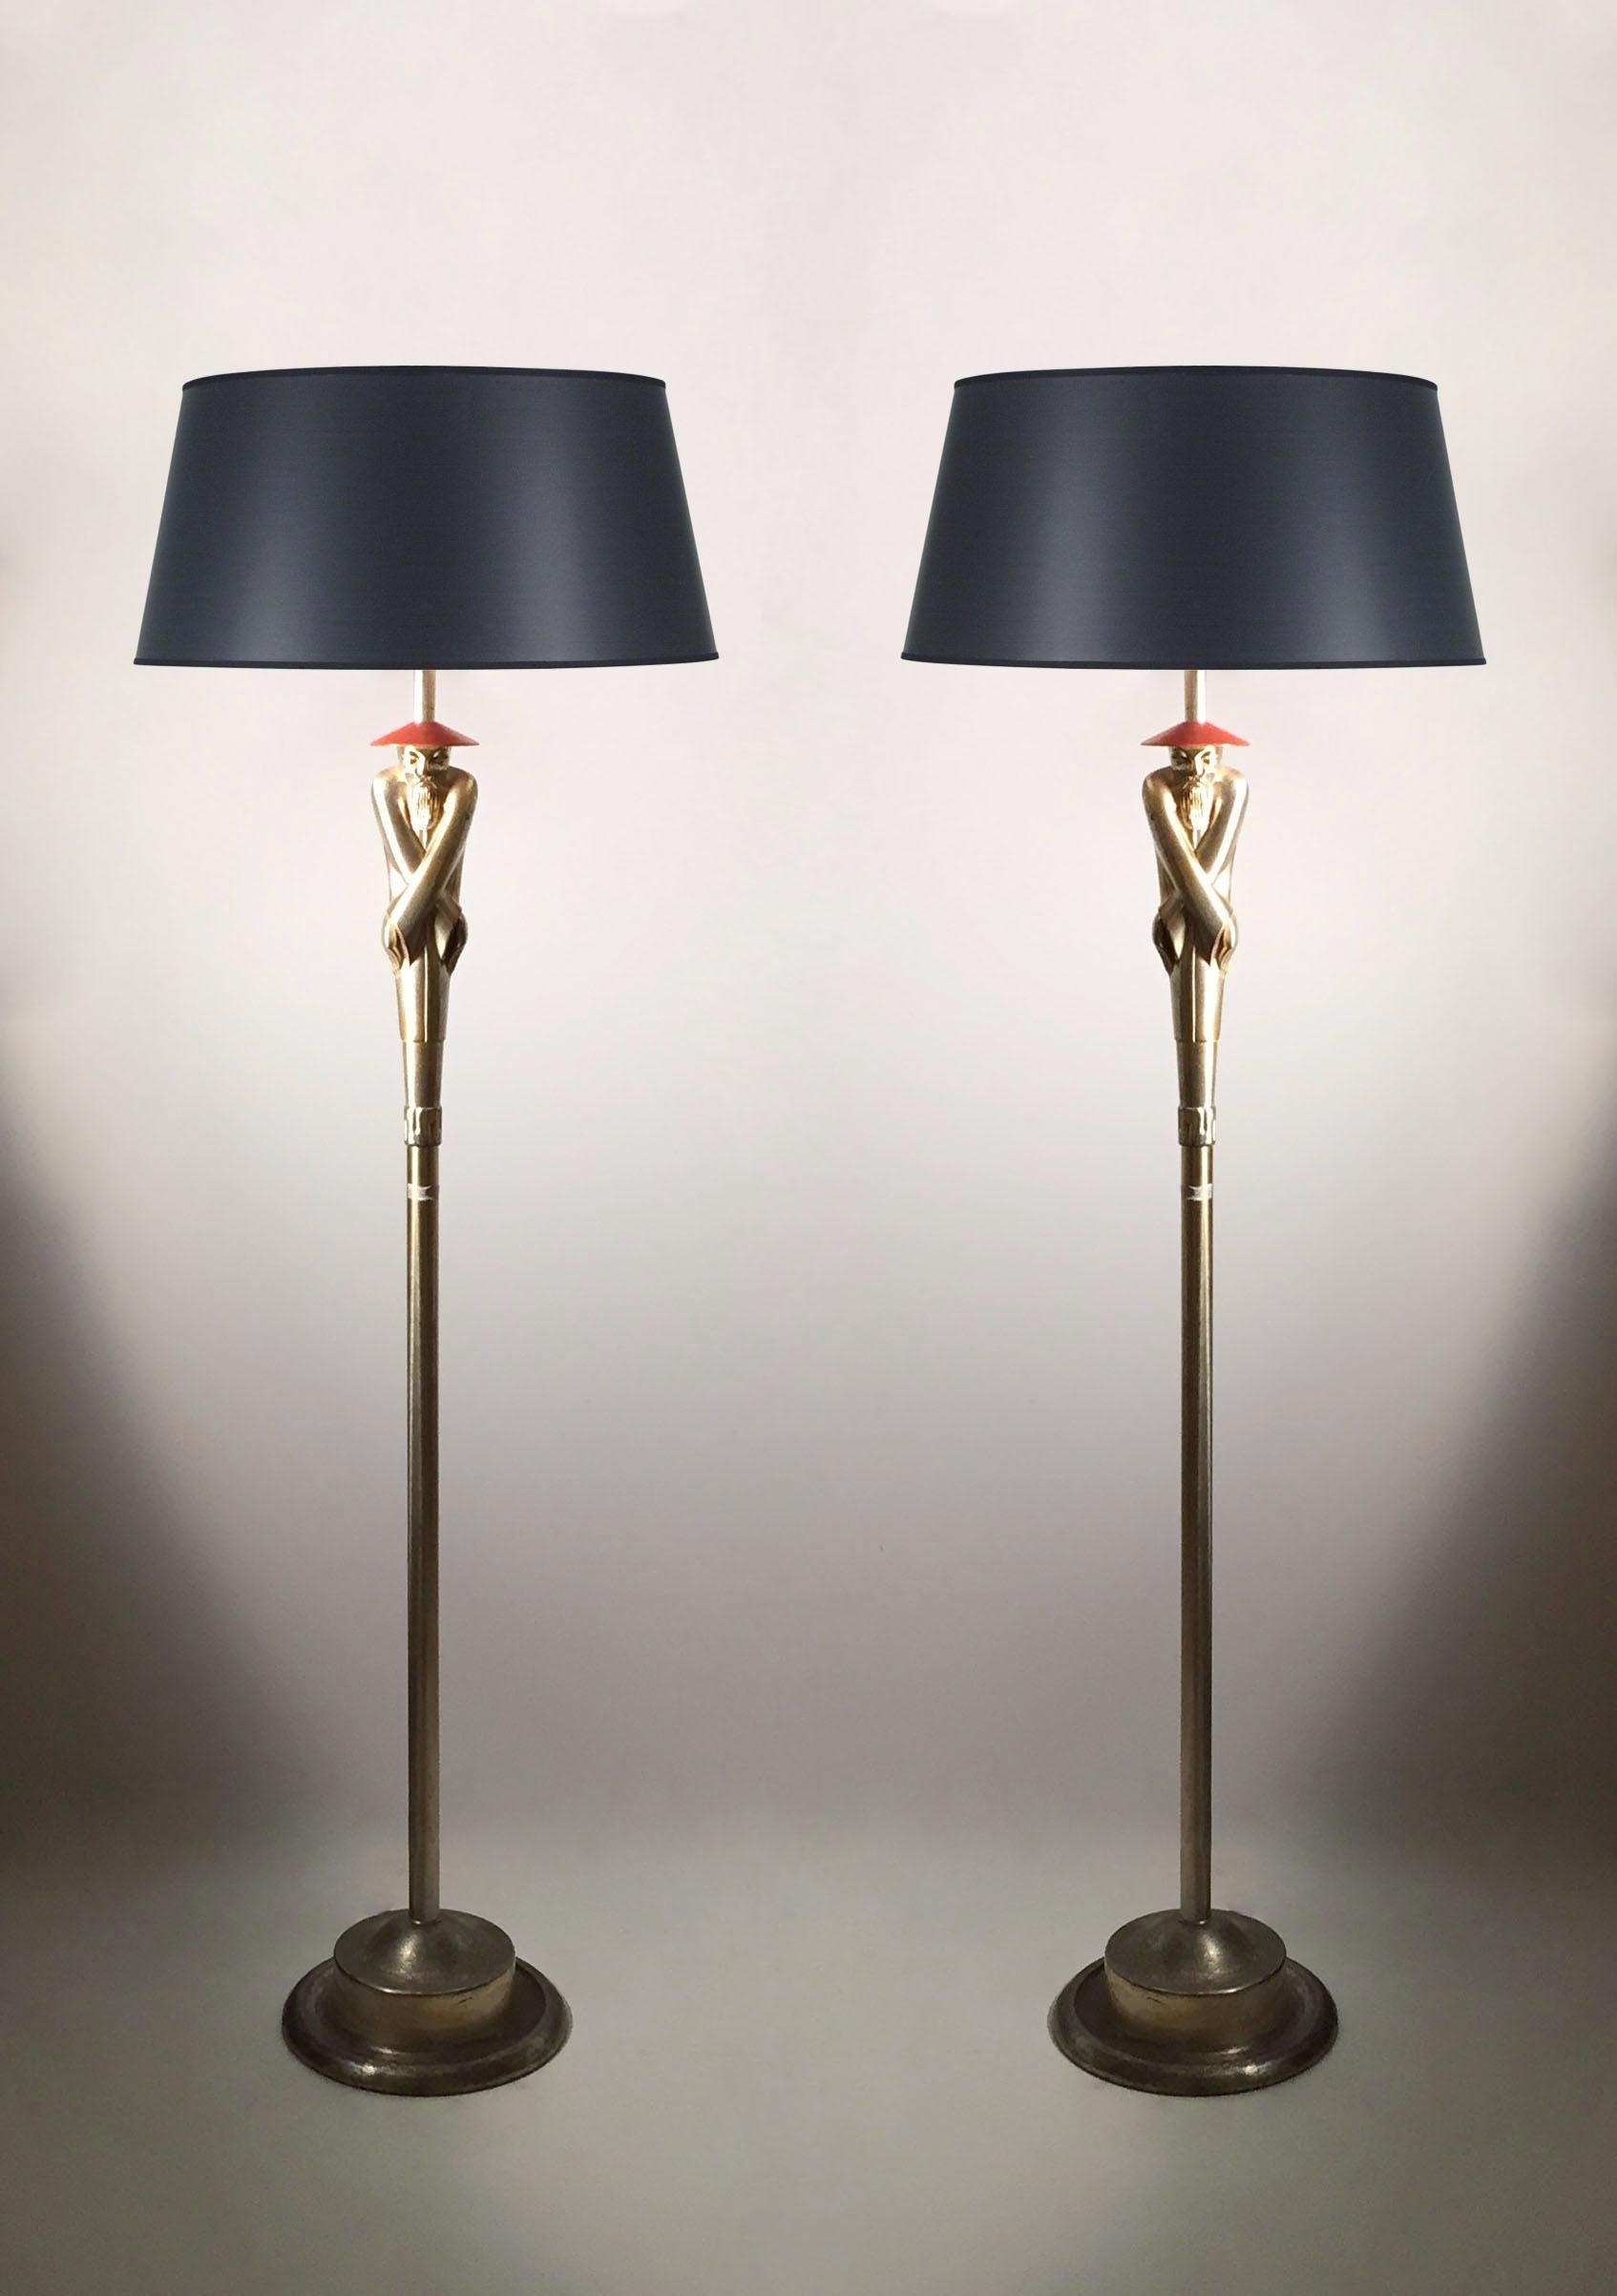 Paar Vintage Deco Viktor Schreckengost Chinoiserie Stehlampe

Ein wirklich schönes Beispiel für dieses stilisierte Chinoiserie-Design. Kommt mit einem originellen korallenfarbenen Schirm mit übergroßem Paspel-Design. In der Art von Hollywood Regency